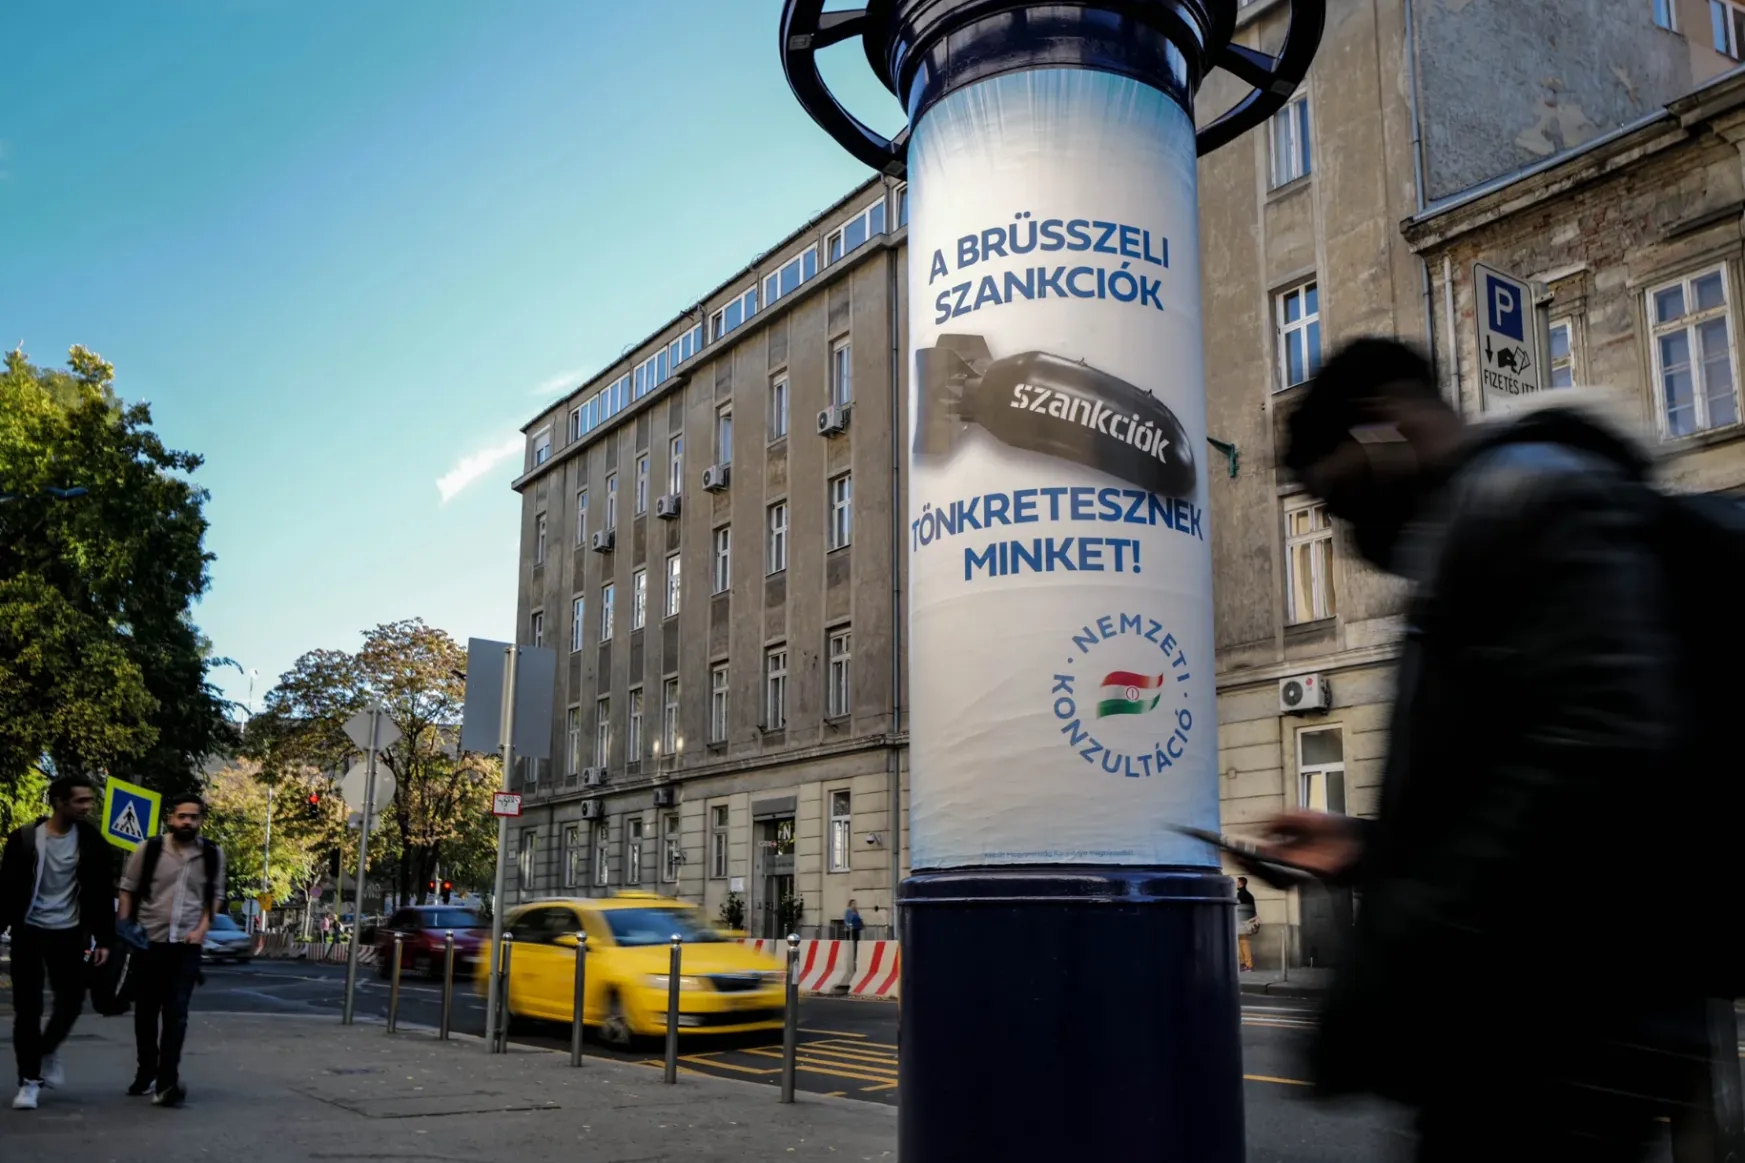 Az utcákon is megjelentek a szankciókat bombaként ábrázoló plakátok